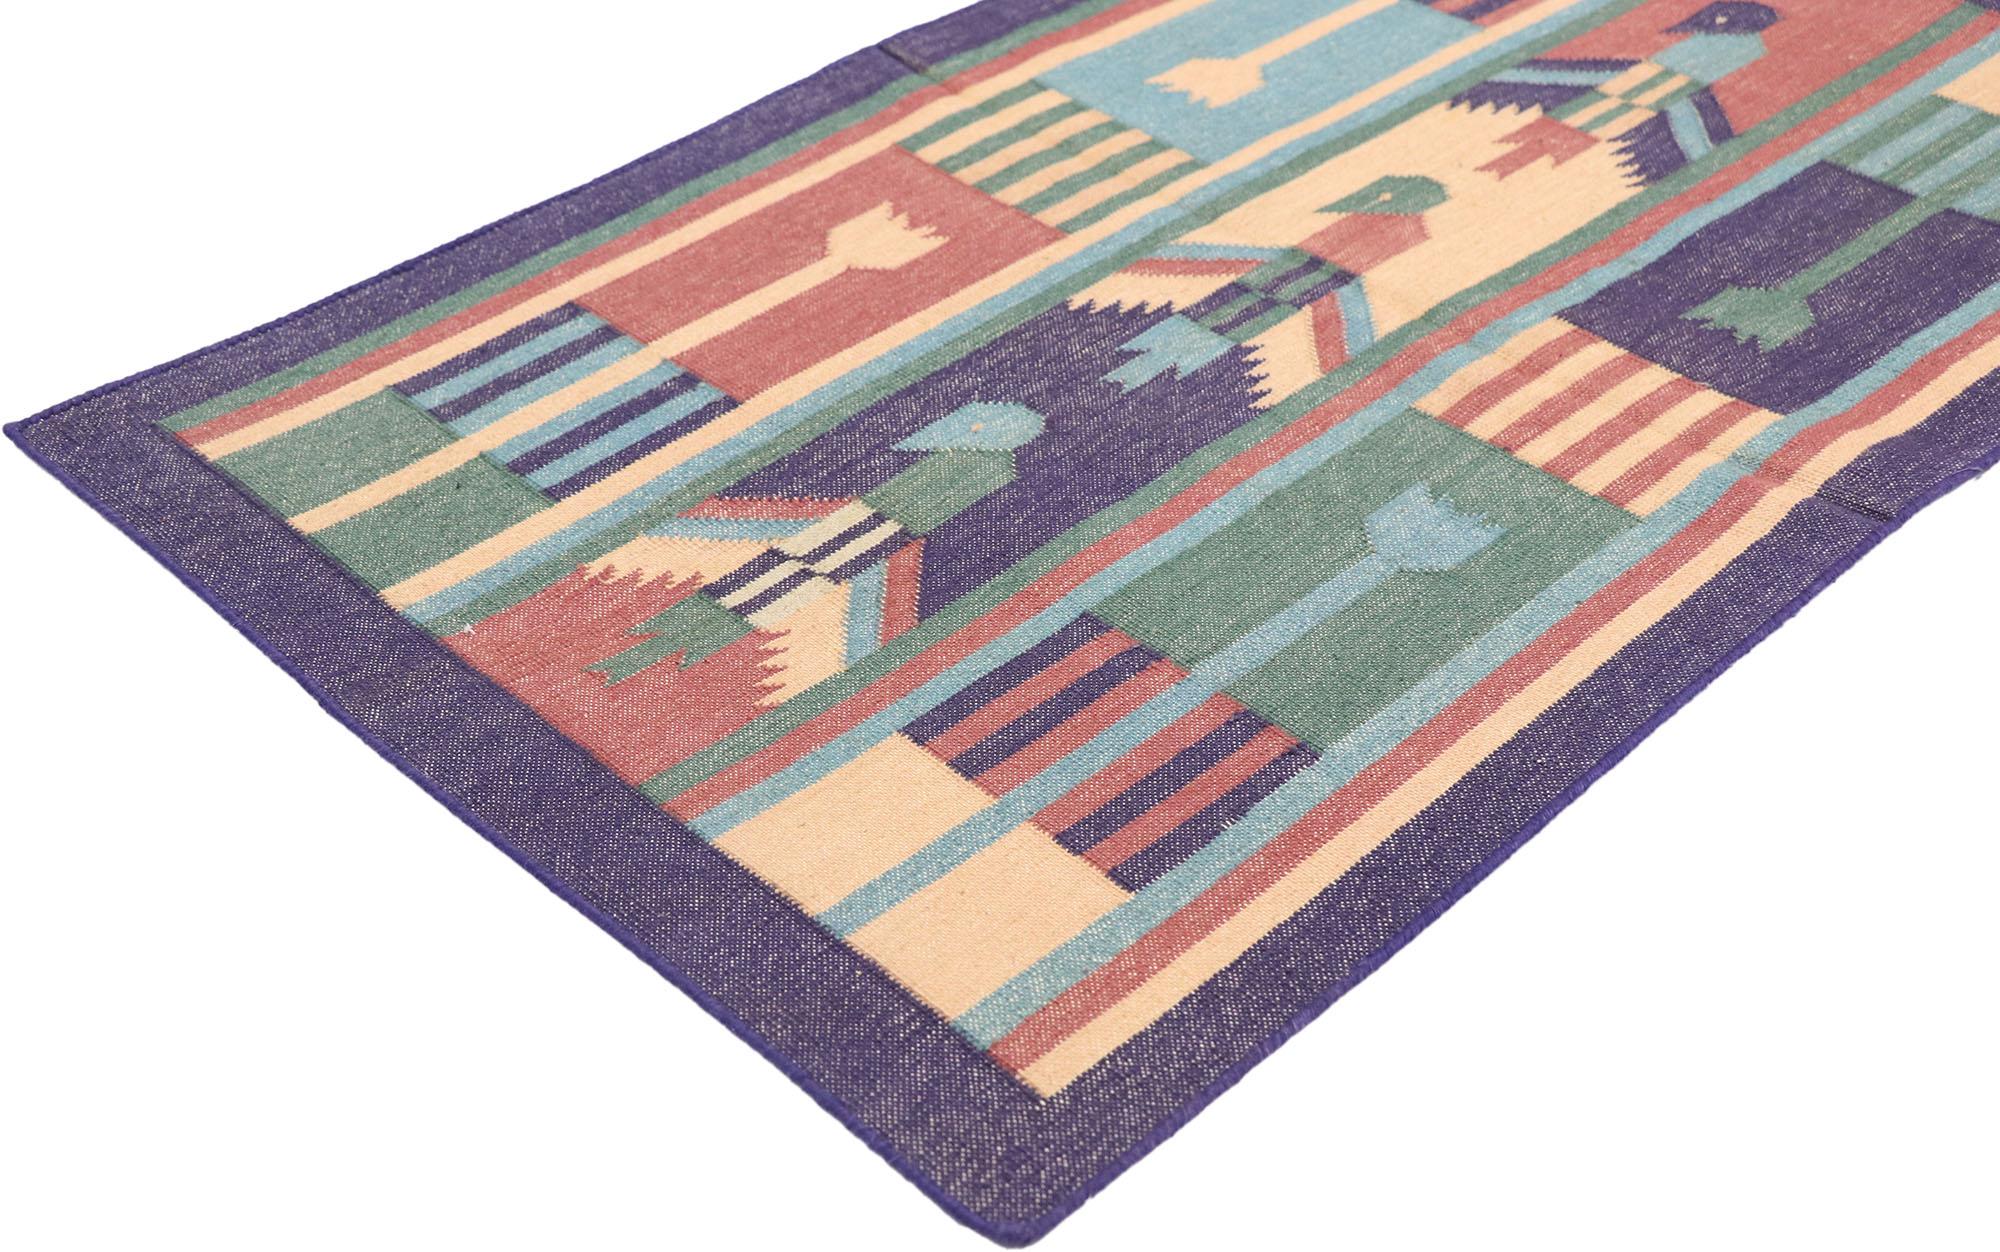 77912 Indischer Dhurrie-Teppich mit postmodernem kubistischem Stil 01'10 x 03'01. voller winziger Details und einem kühnen, ausdrucksstarken Design, kombiniert mit leuchtenden Farben und Tribal-Stil, ist dieser handgewebte indische Dhurrie-Teppich